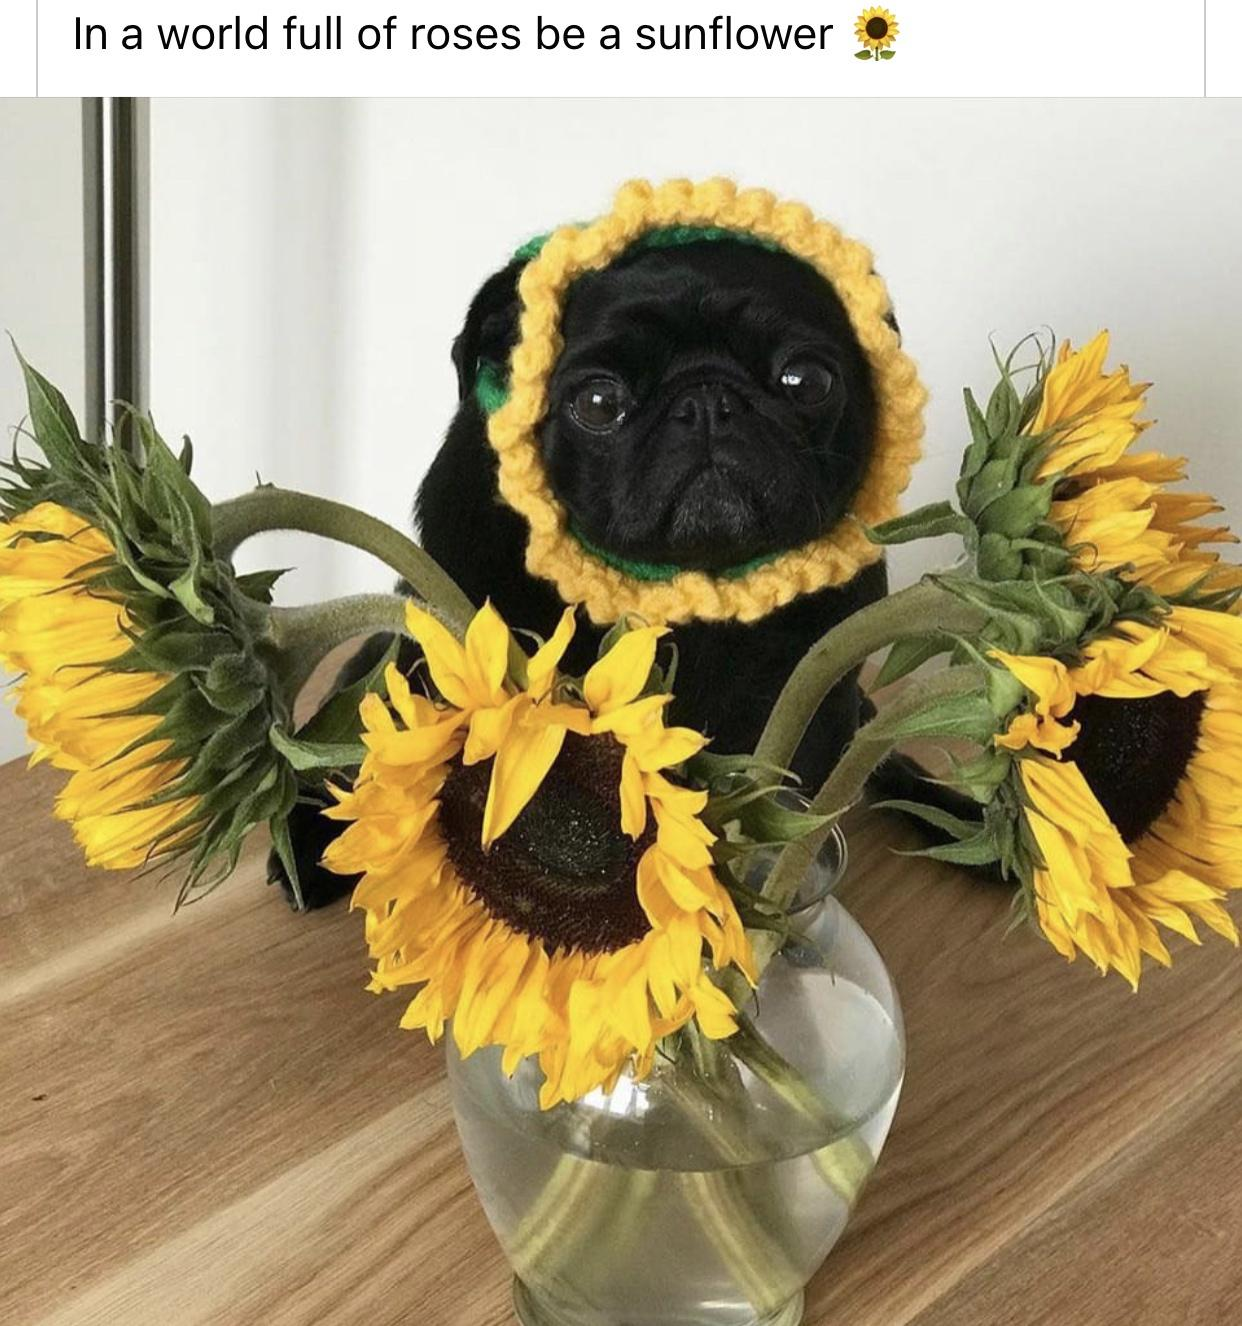 monday morning randomness - sunflower dog - In a world full of roses be a sunflower